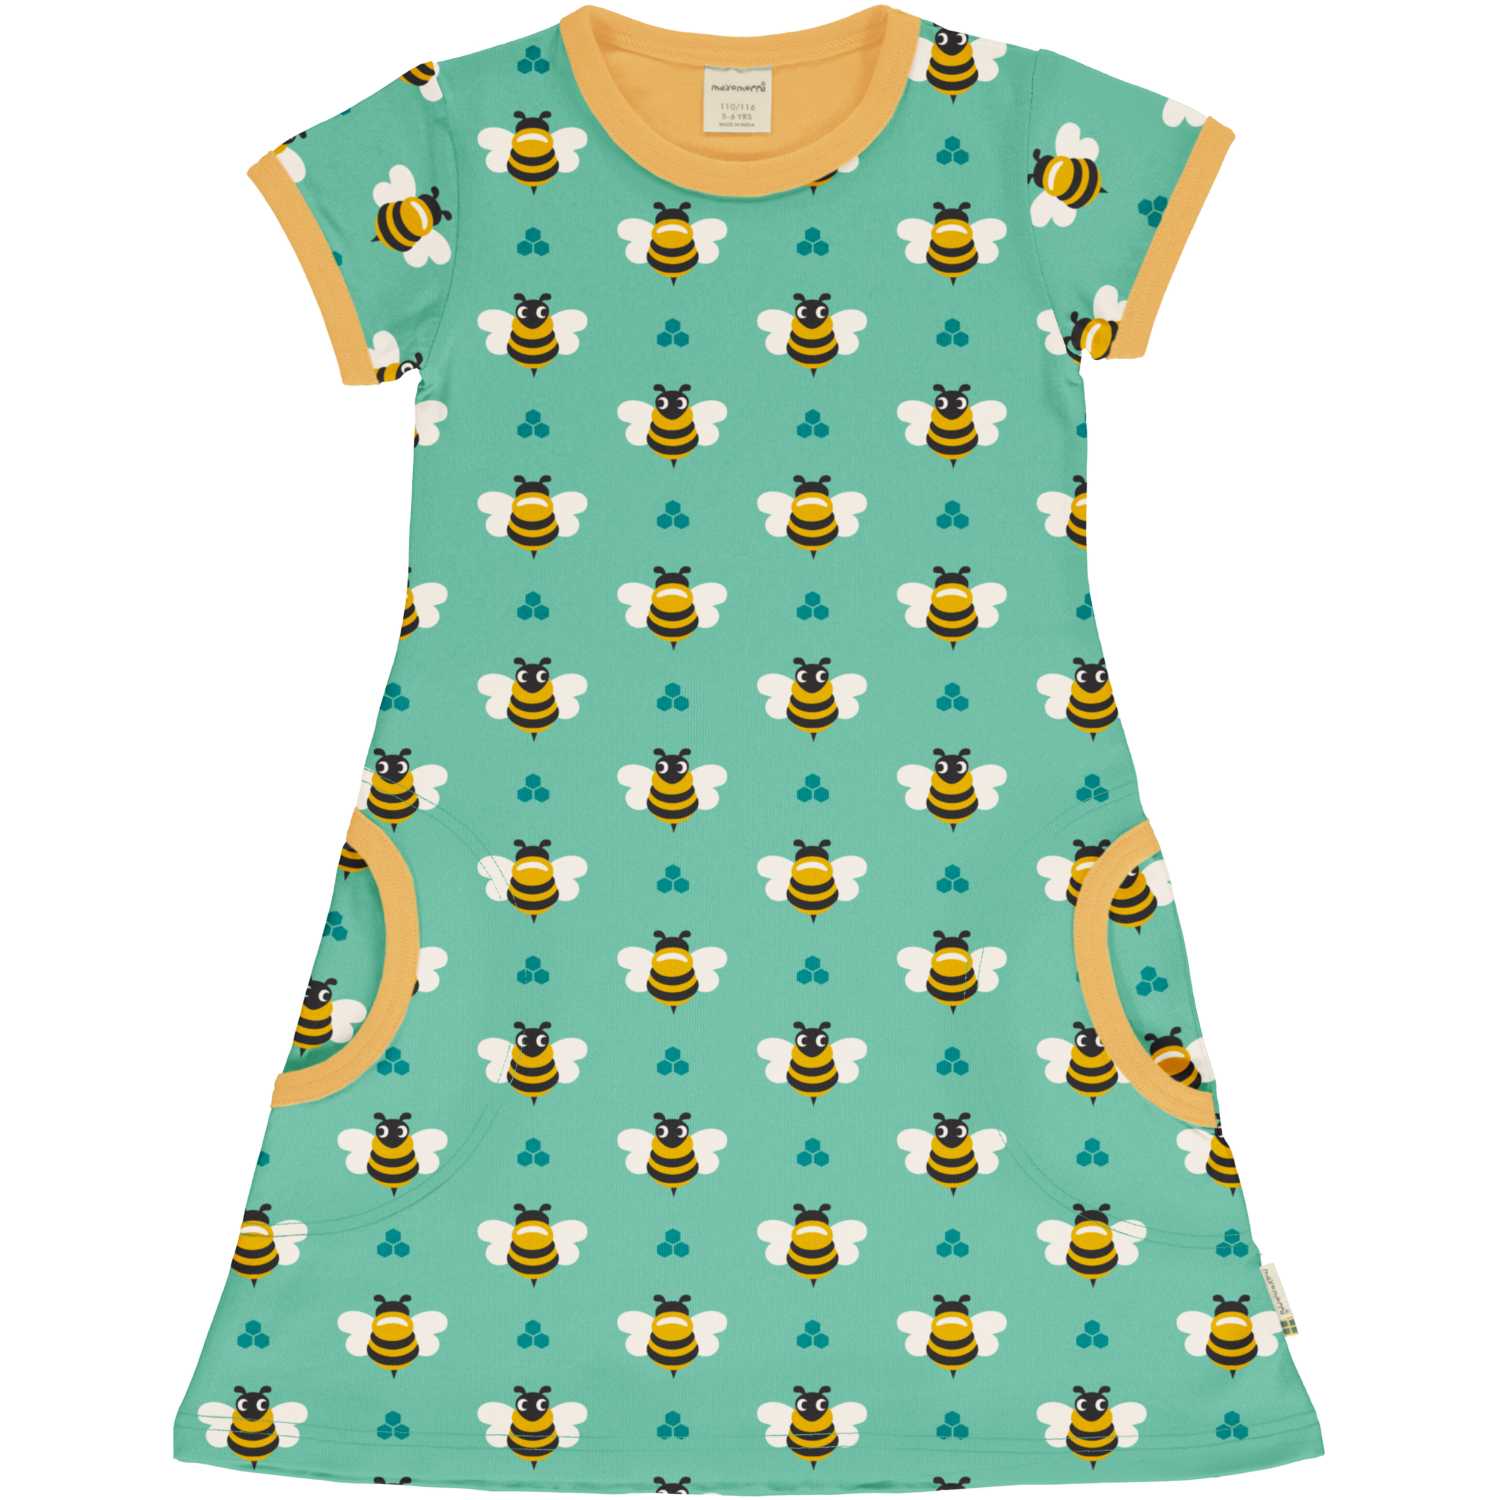 Maxomorra Bee Pocket Dress Ss24 Clothing 3-4YRS / Green,5-6YRS / Green,7-8YRS / Green,1-2 YRS / Green